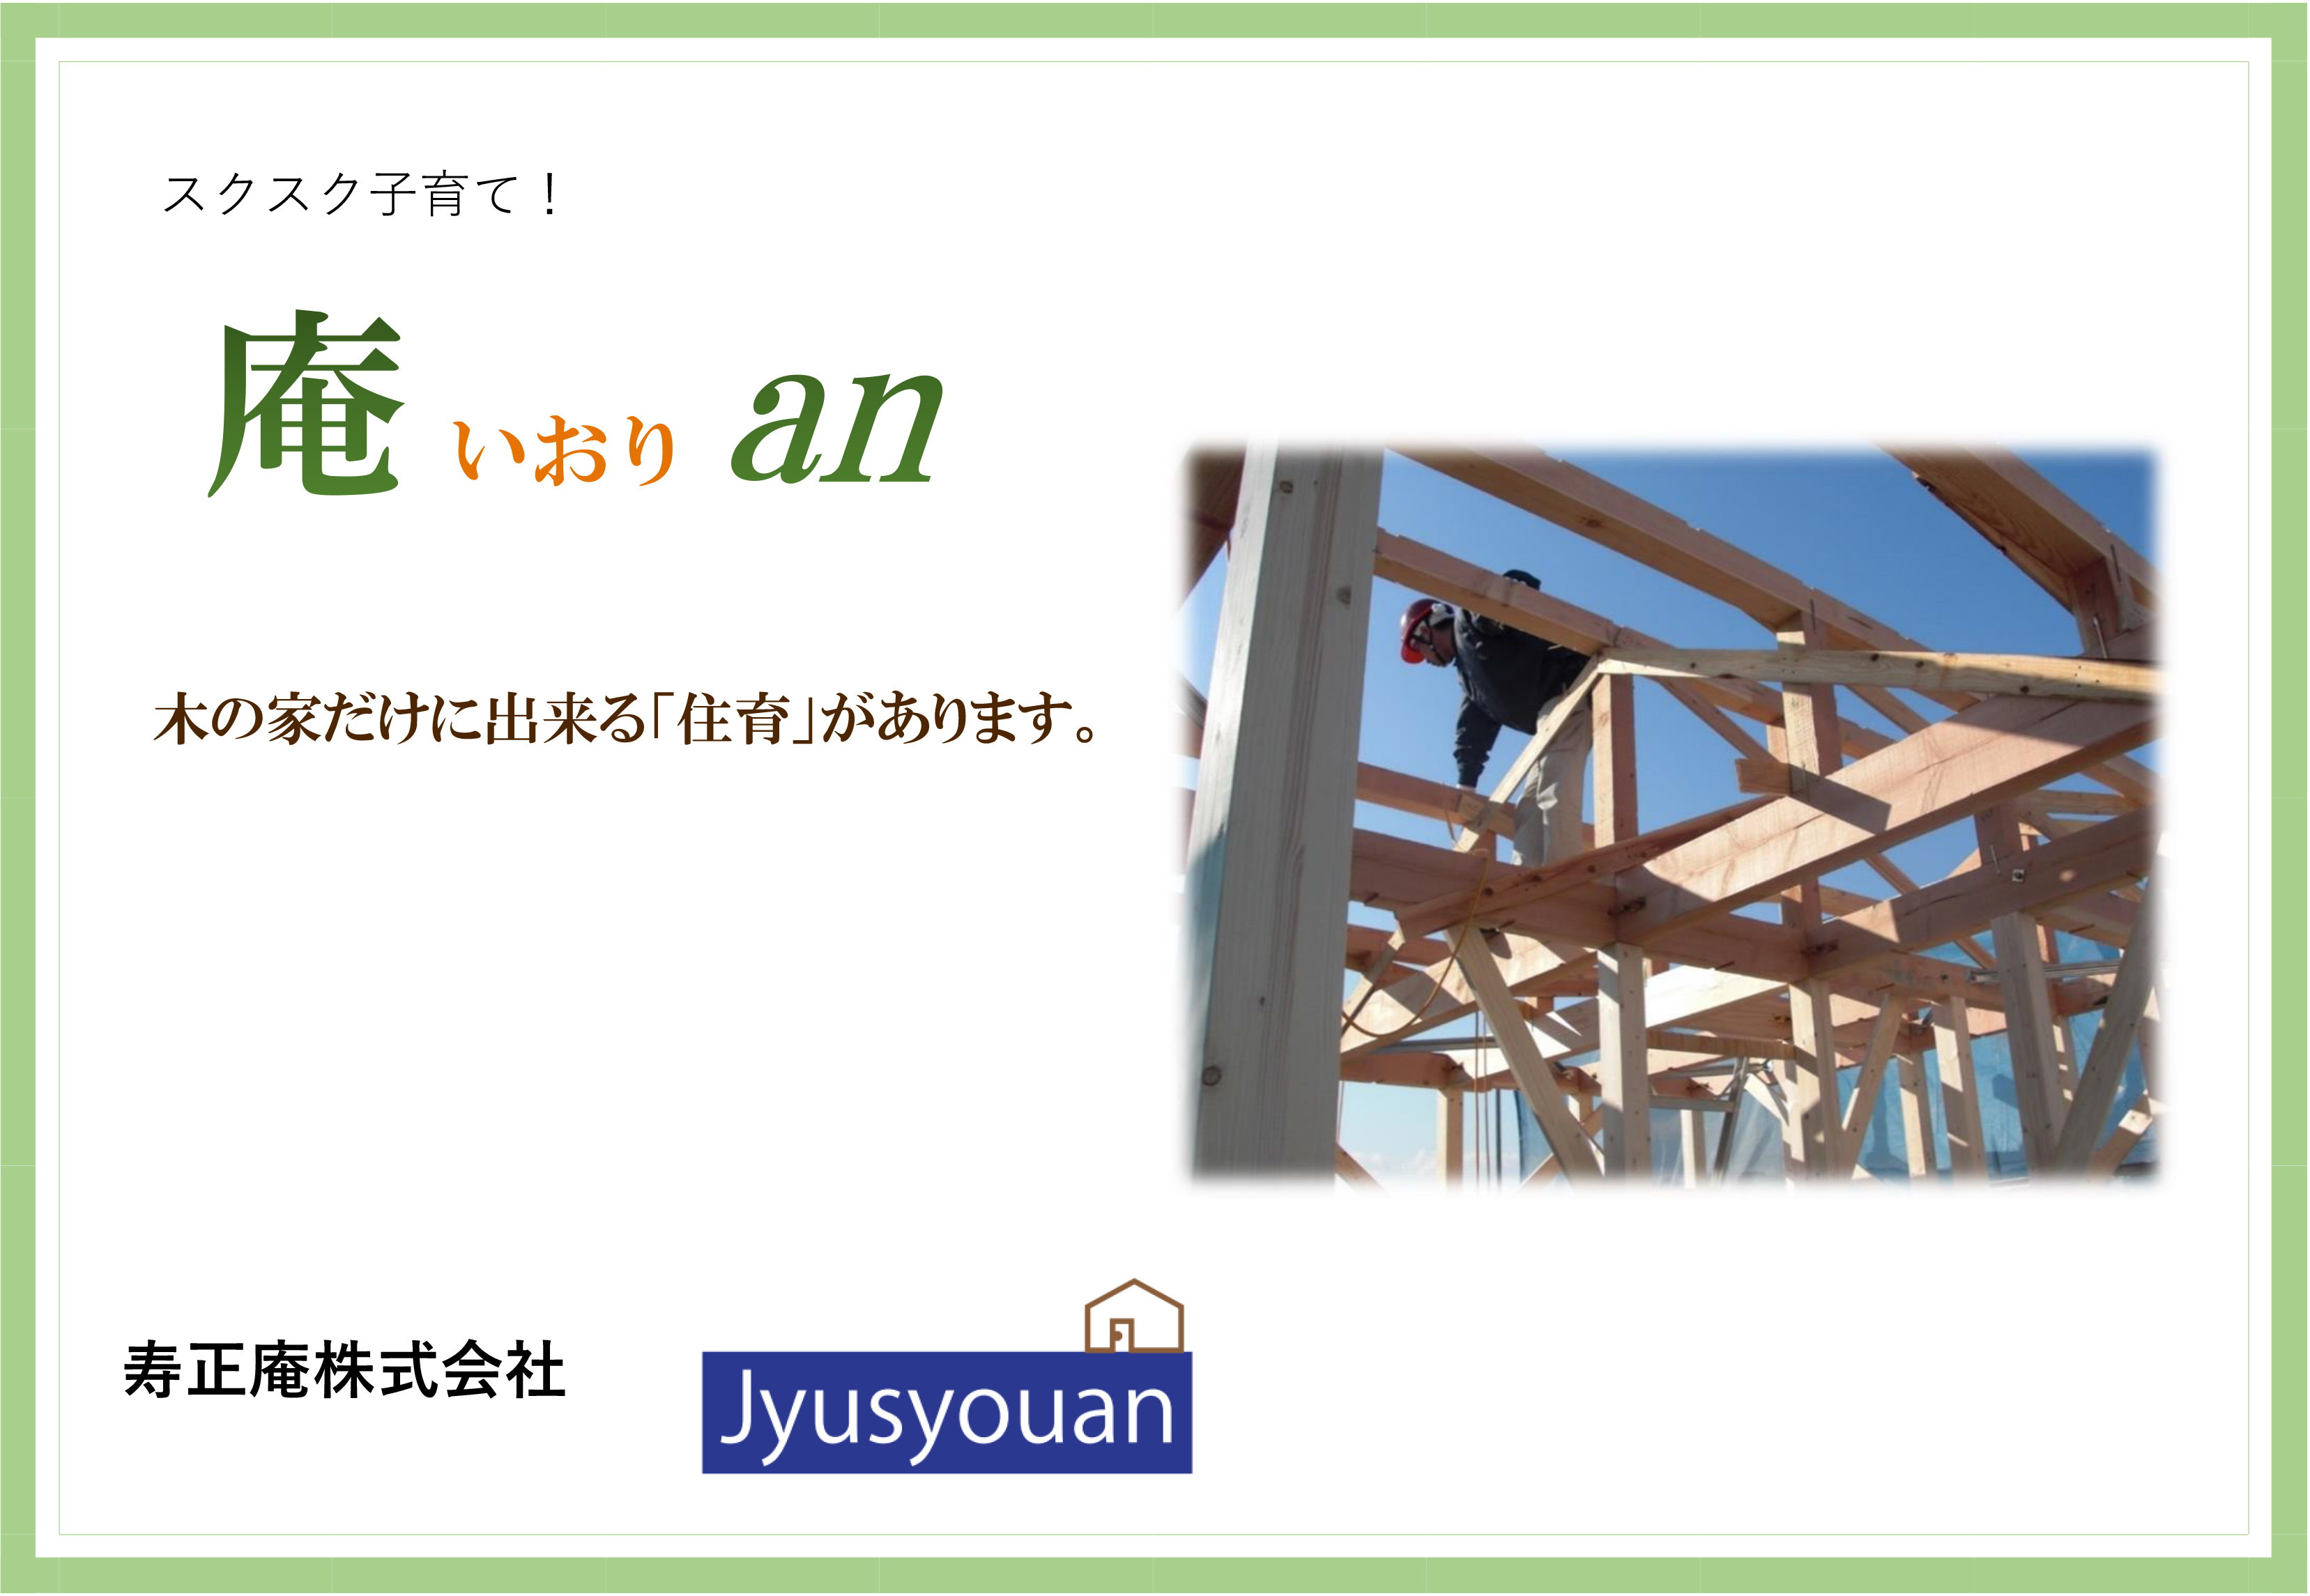 奈良県、大阪府の注文住宅でマイホームを建てたい方は、寿正庵へお任せください。